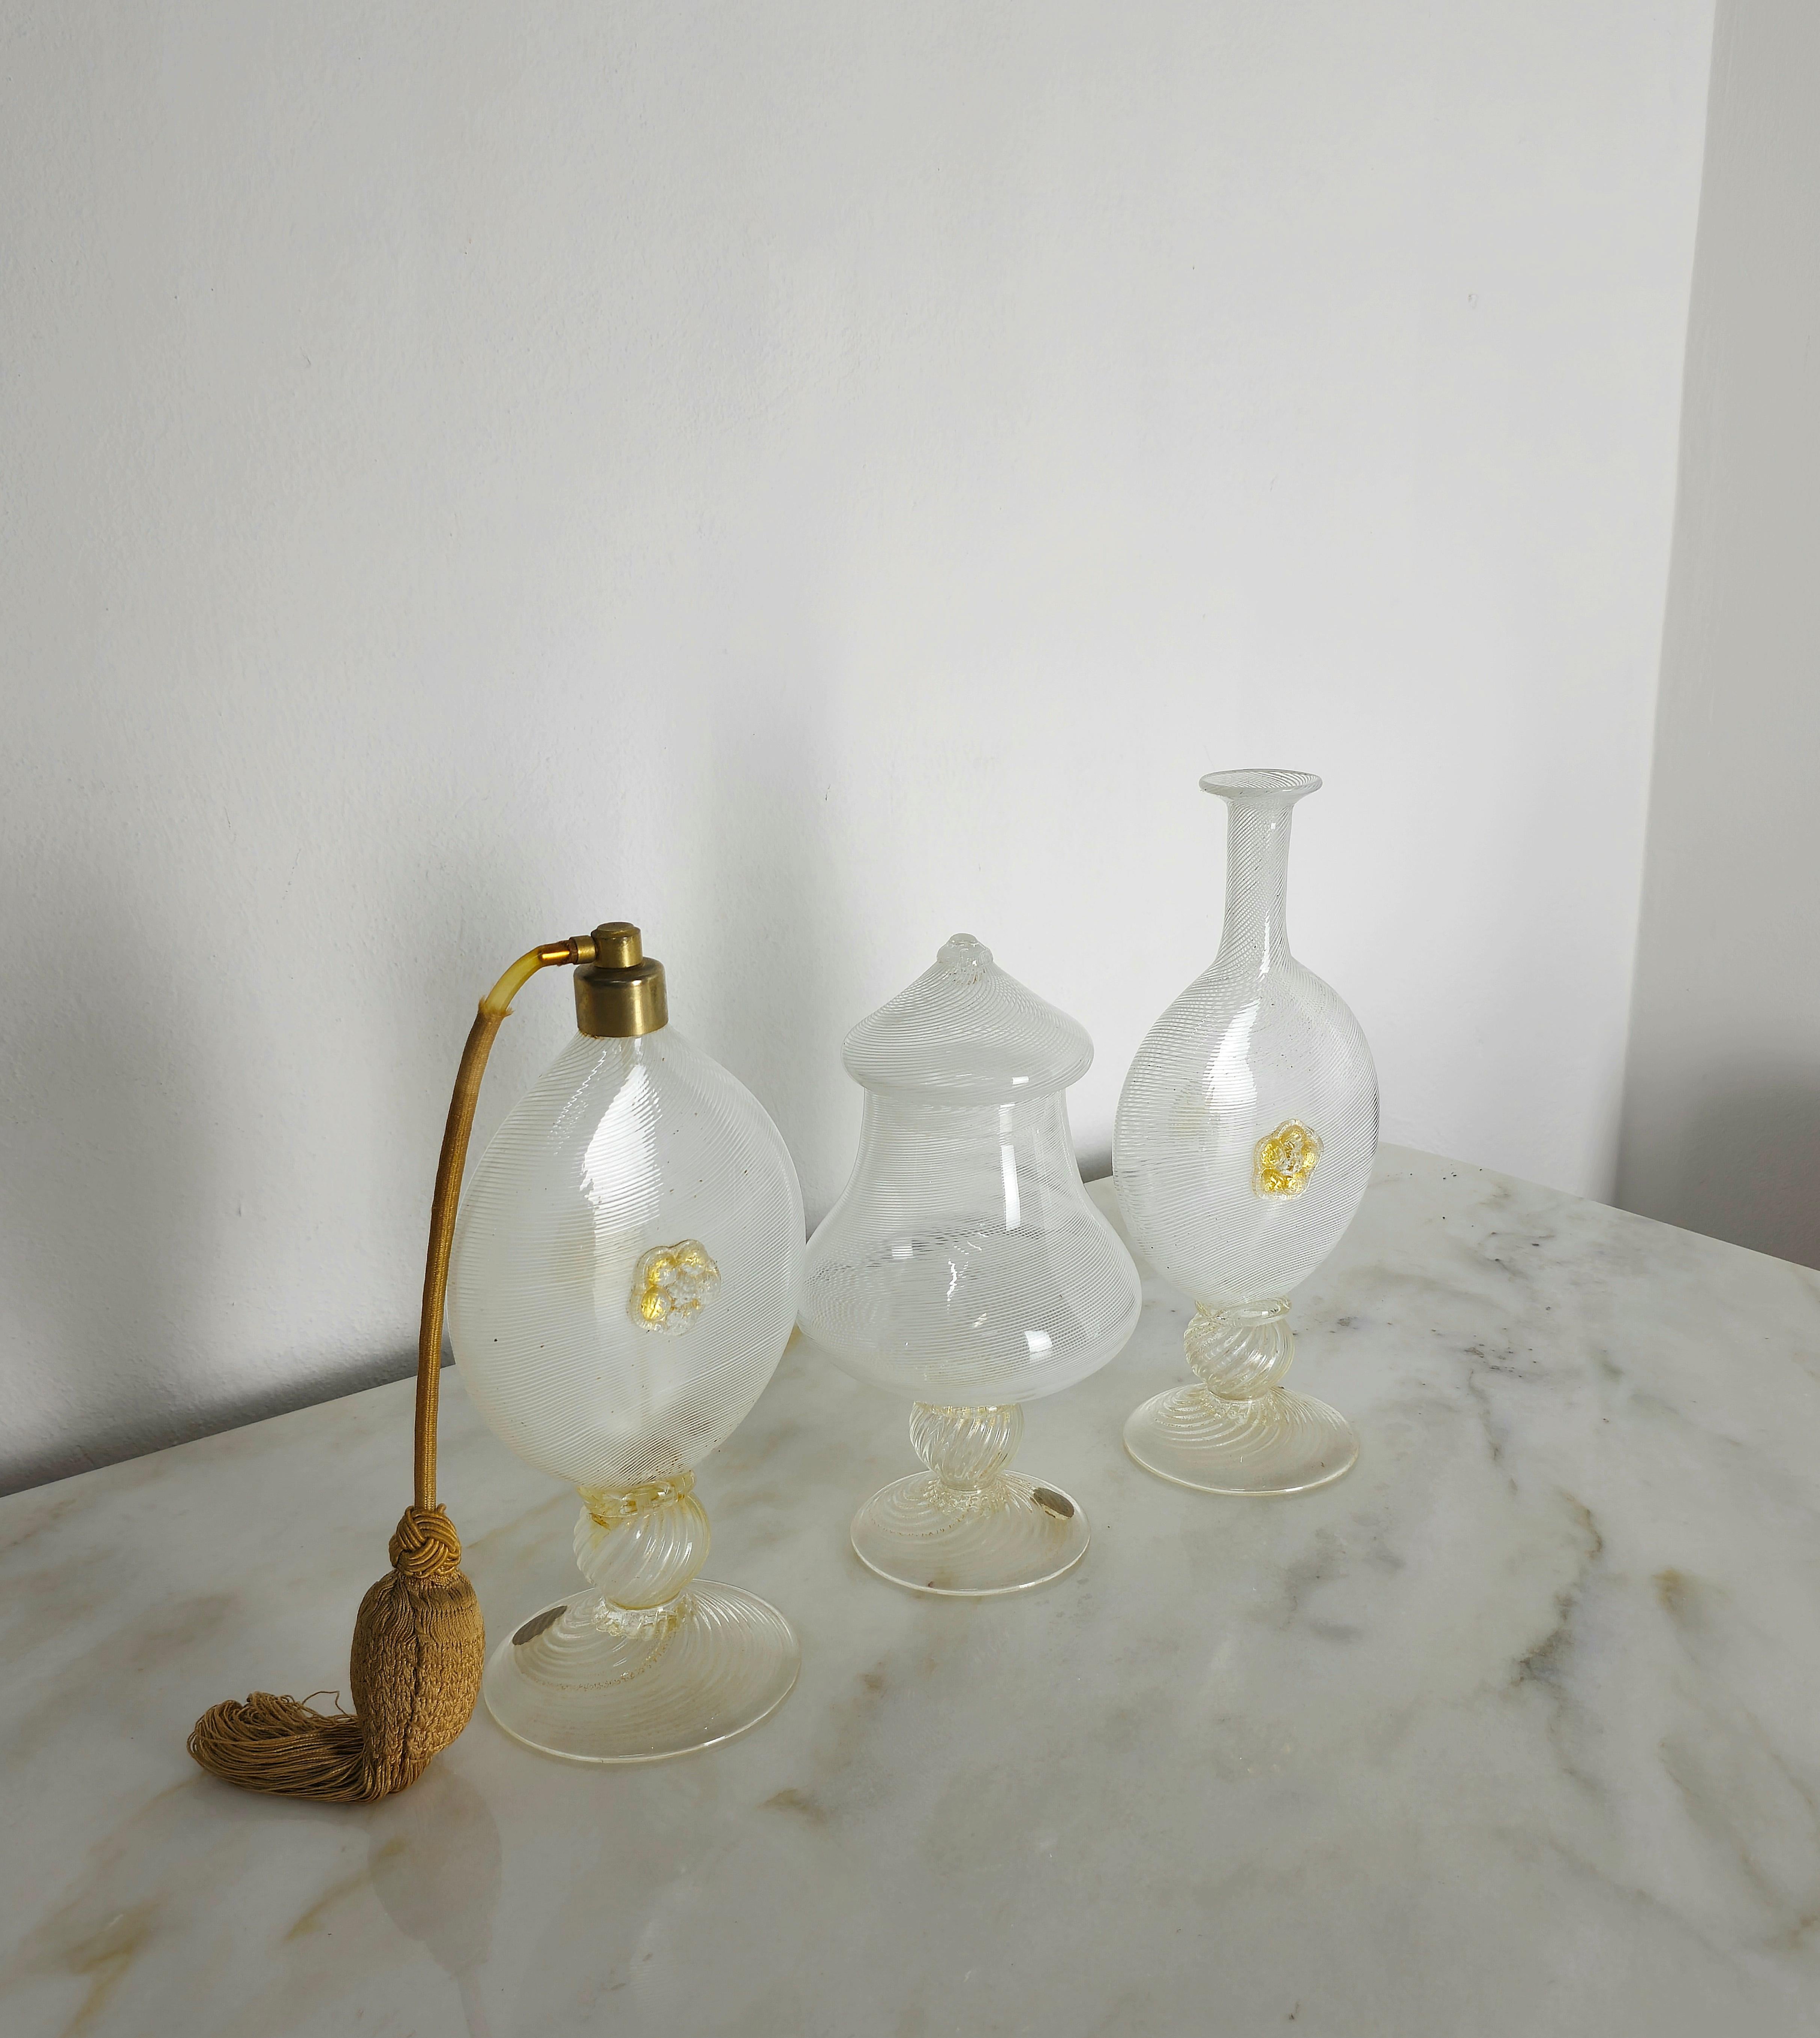 Set aus 3 Badezimmer-/WC-Objekten, hergestellt in den 1940er Jahren von Barovier&Toso aus Murano-Glas mit weißem Filigran in transparenten und weißen Farbtönen mit goldenem Dekor.
Wir möchten darauf hinweisen, dass dieses Set nur als Dekorations-